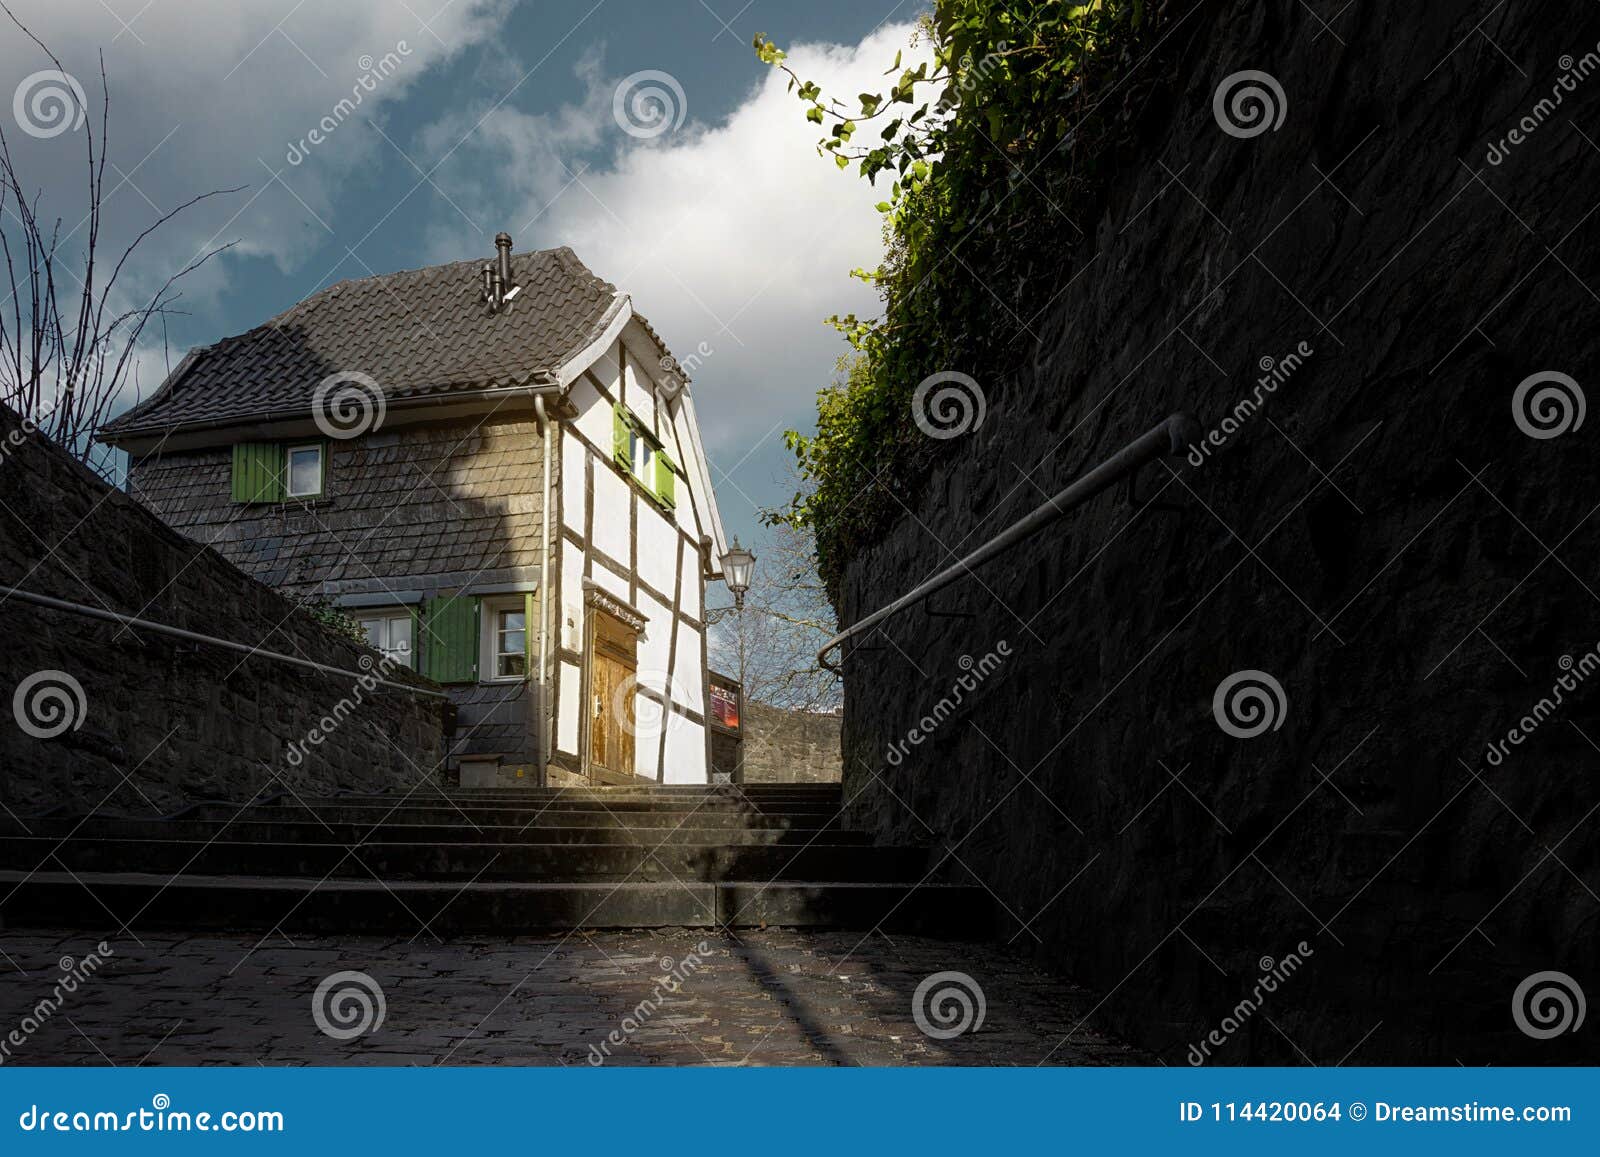 an old framehouse in germany / hattingen